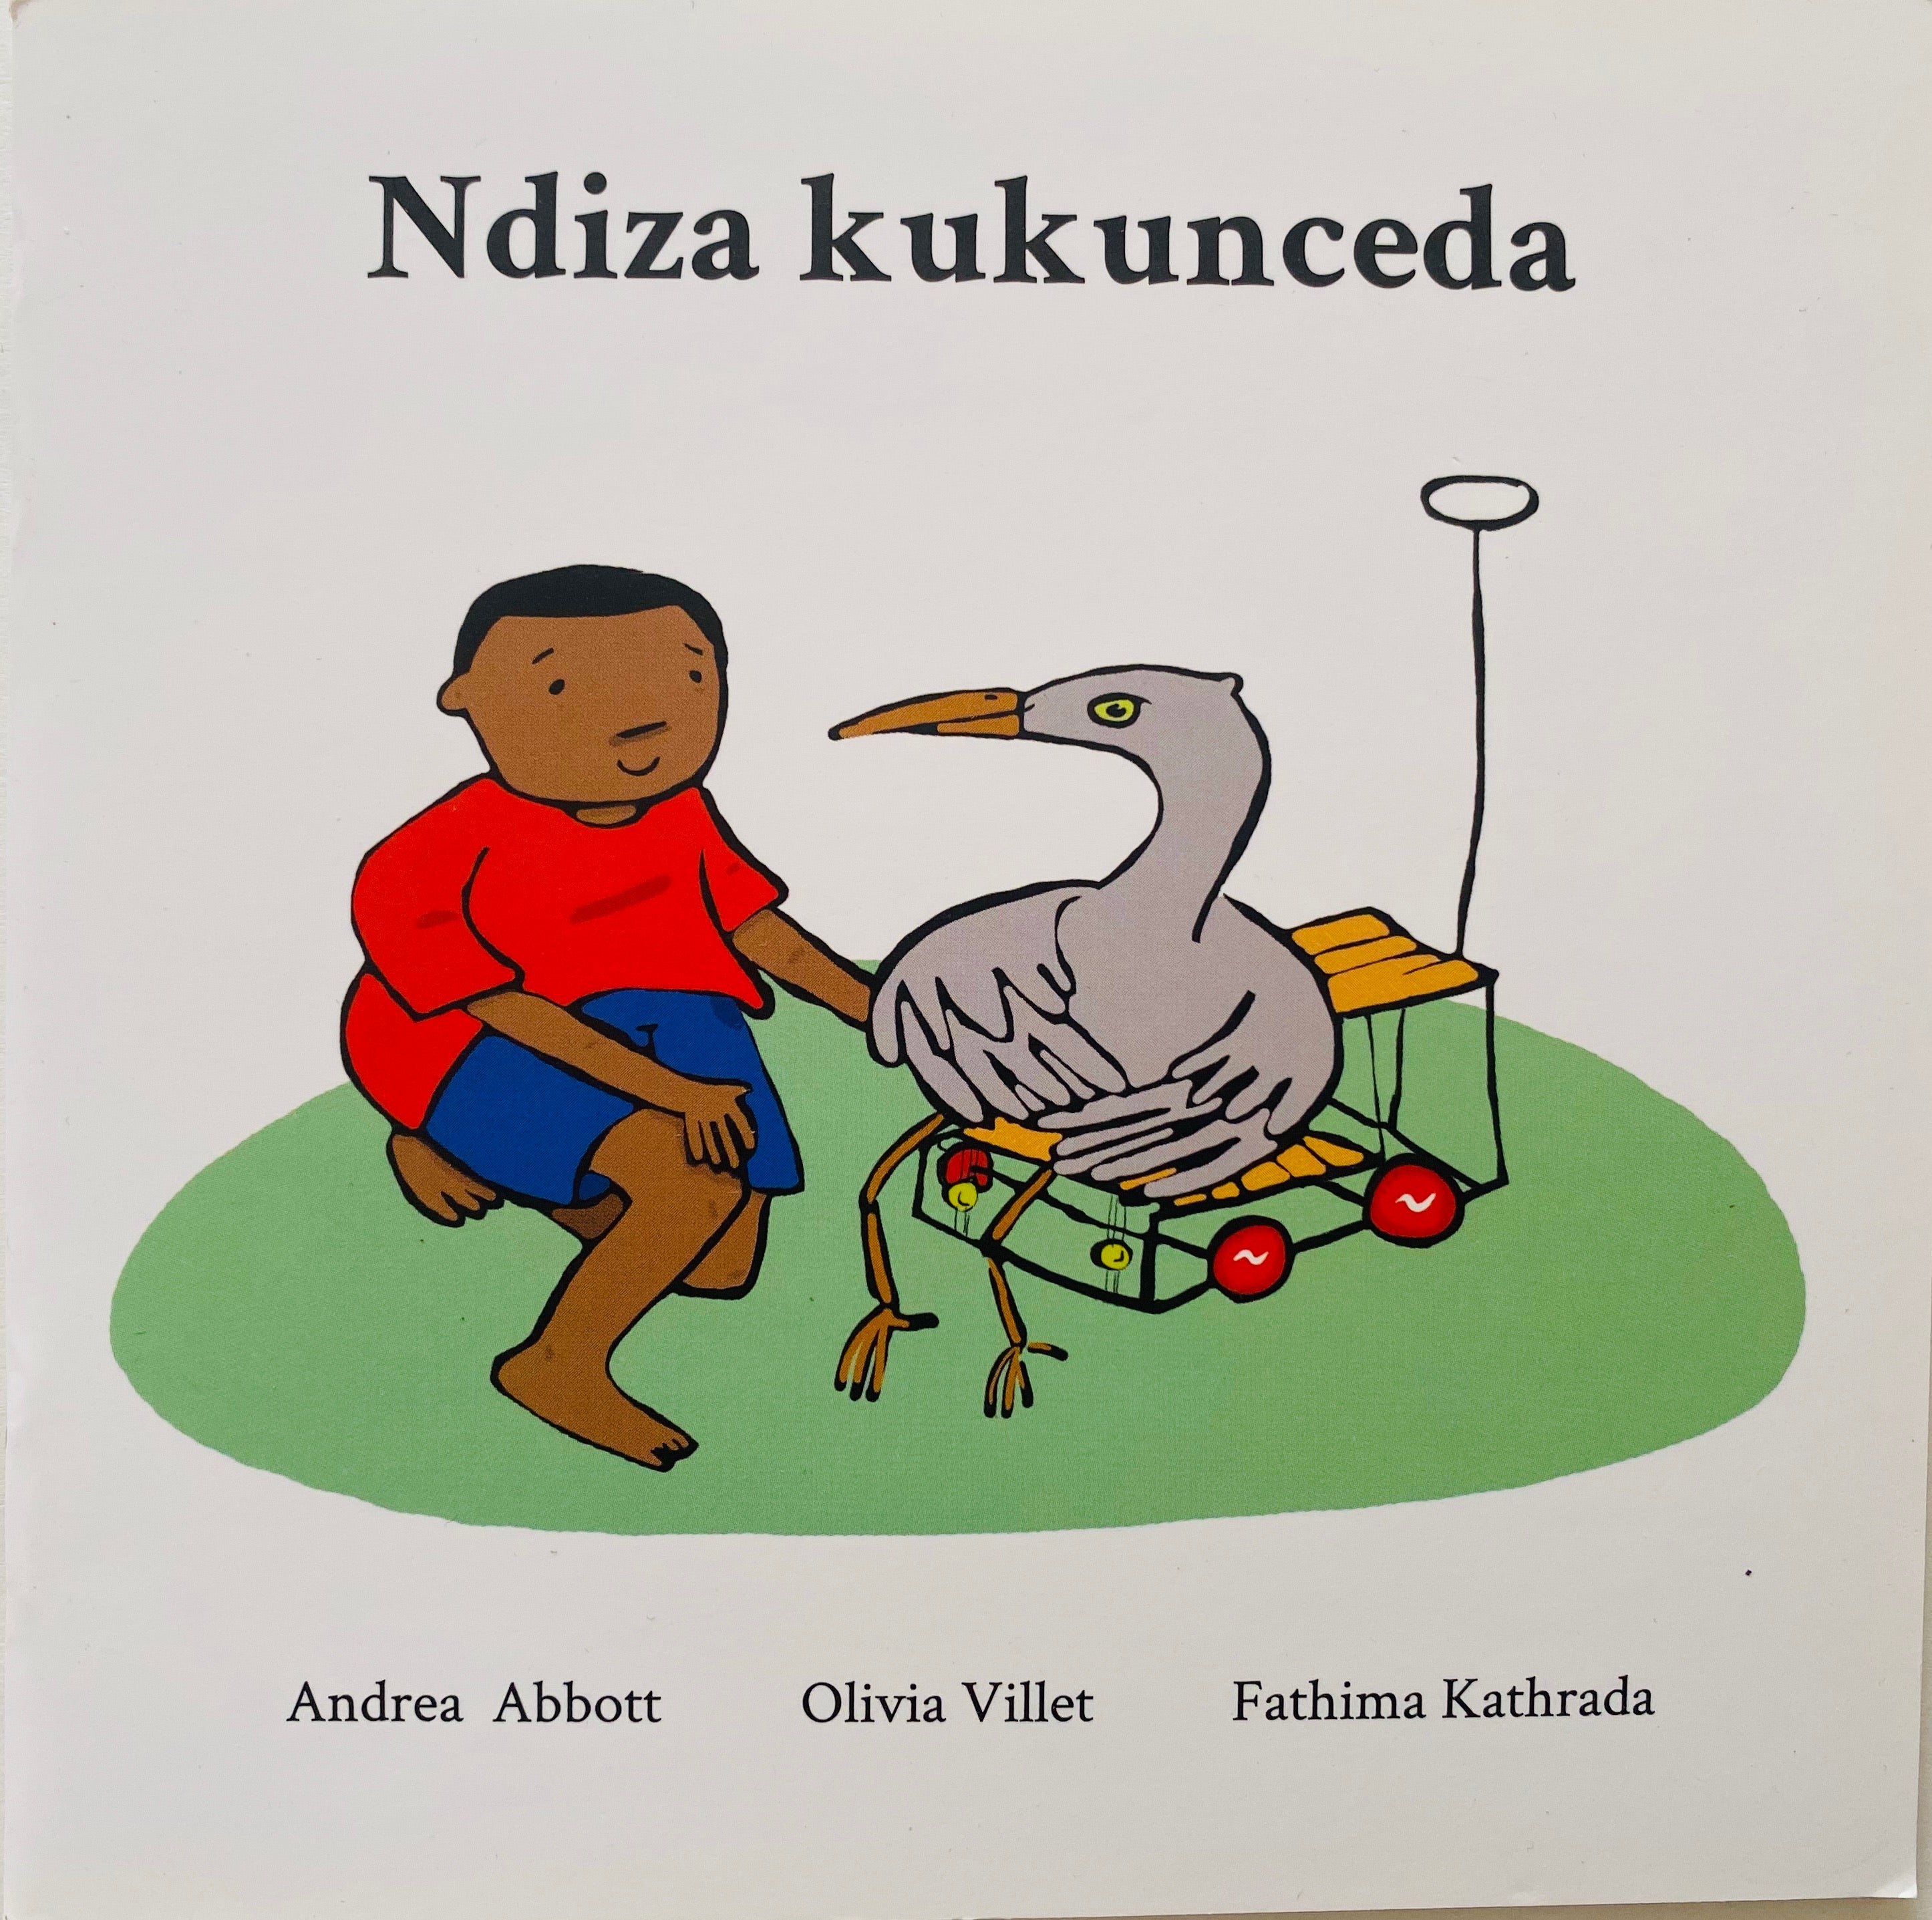 NDIZA KUKUNCEDA (I will help you)